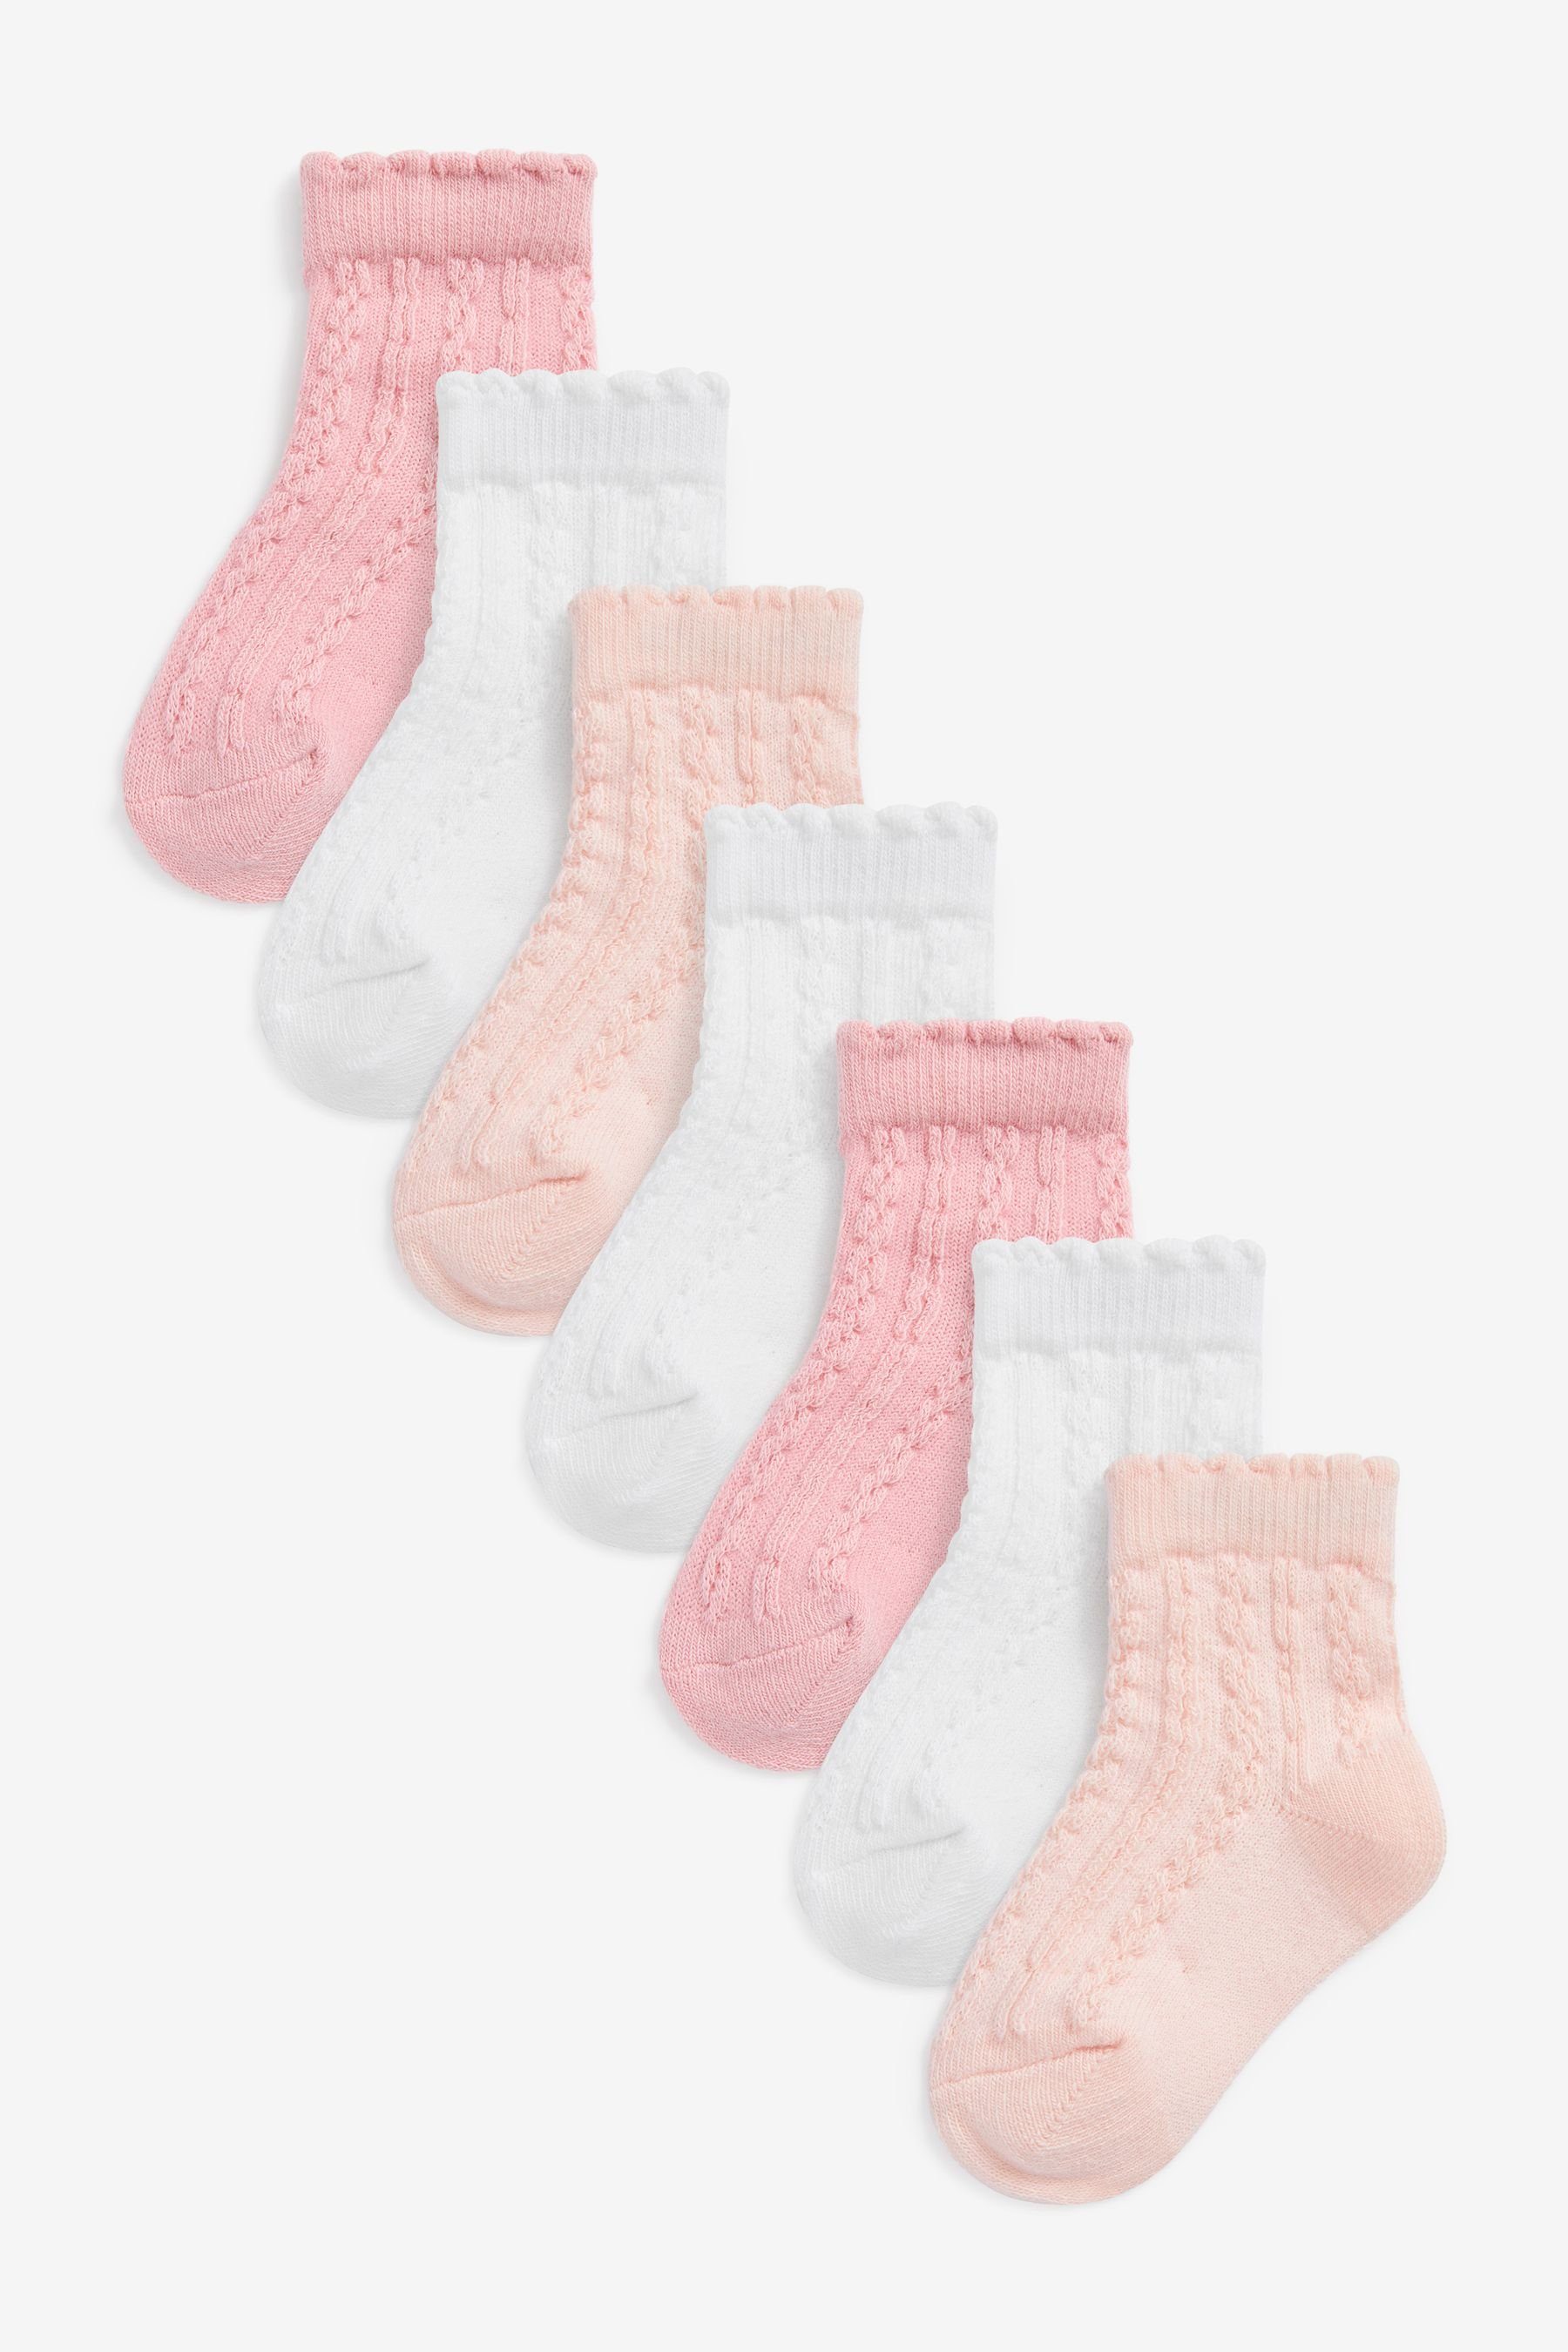 Next Kurzsocken Baby-Socken im 7er-Pack (7-Paar) Pink/White Cable Knit | Kurzsocken